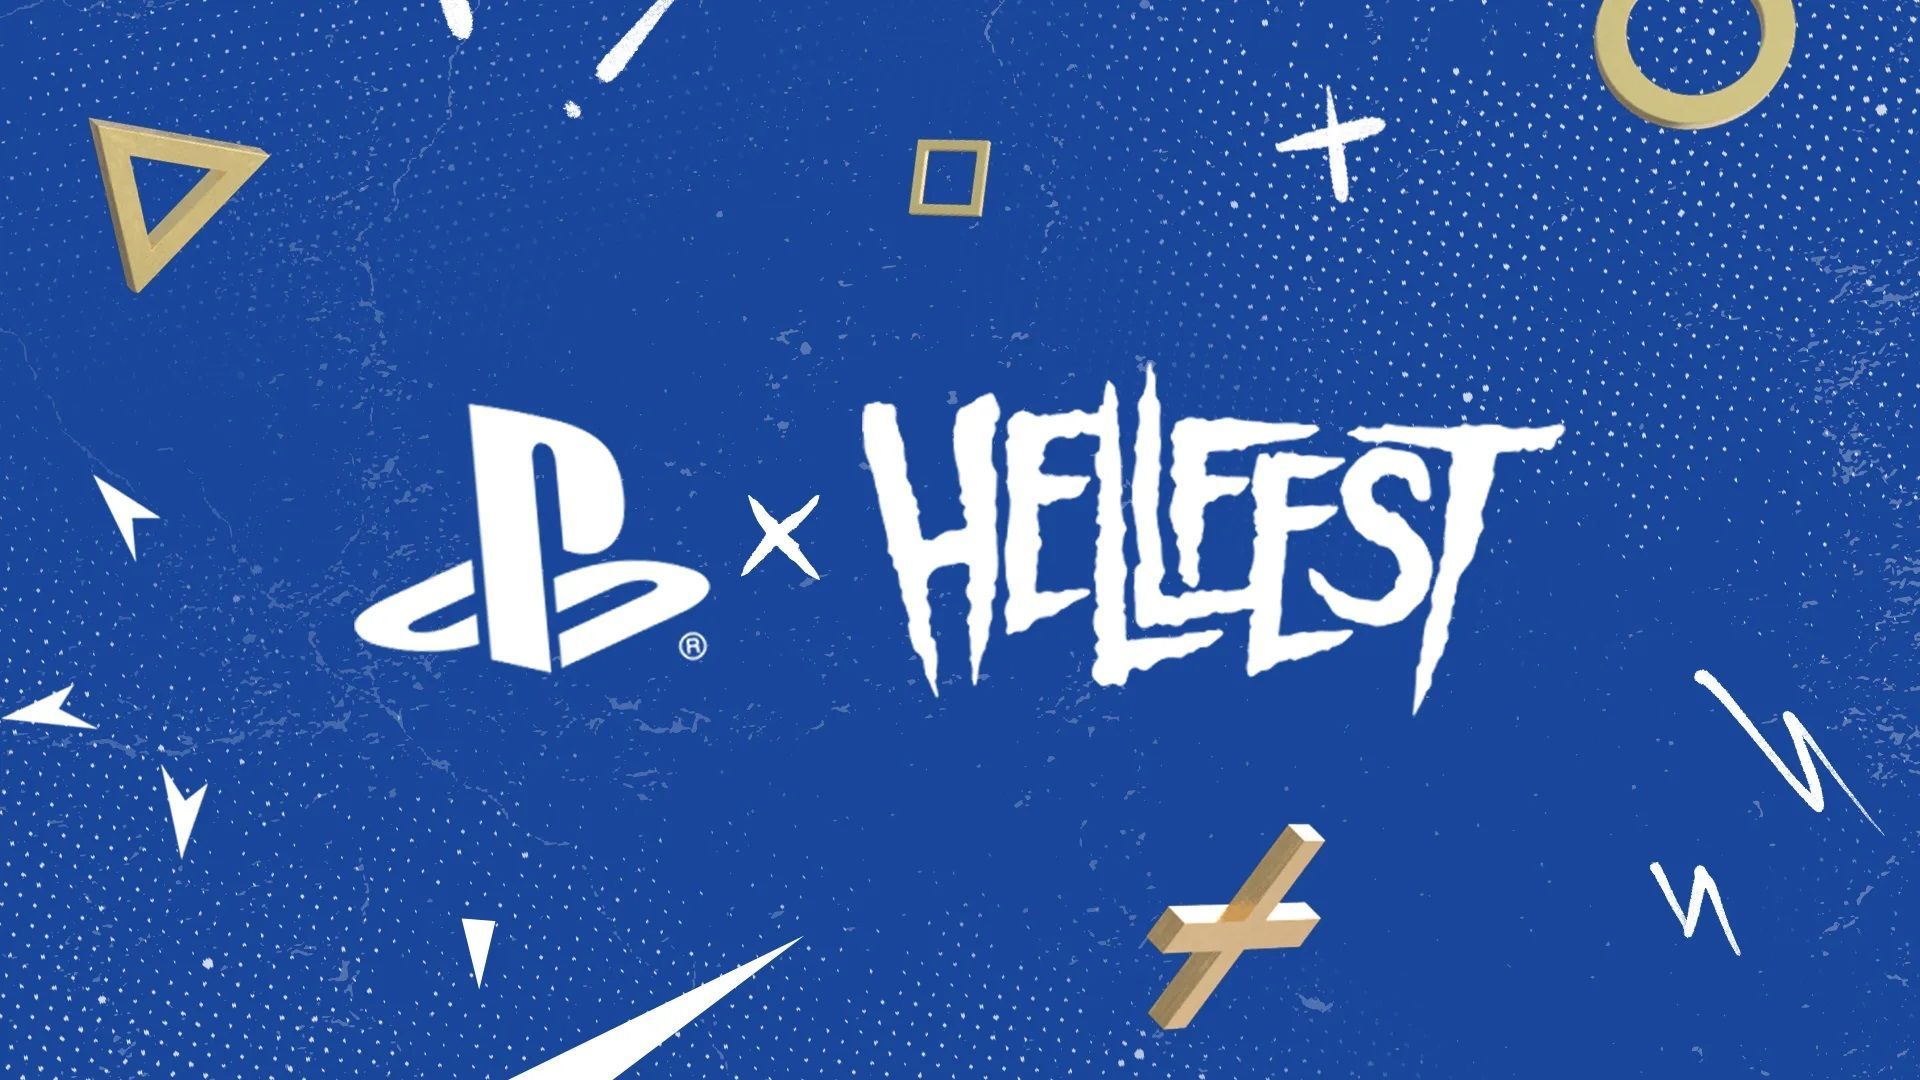 PlayStation au Hellfest : gagner sa place grâce aux jeux vidéo